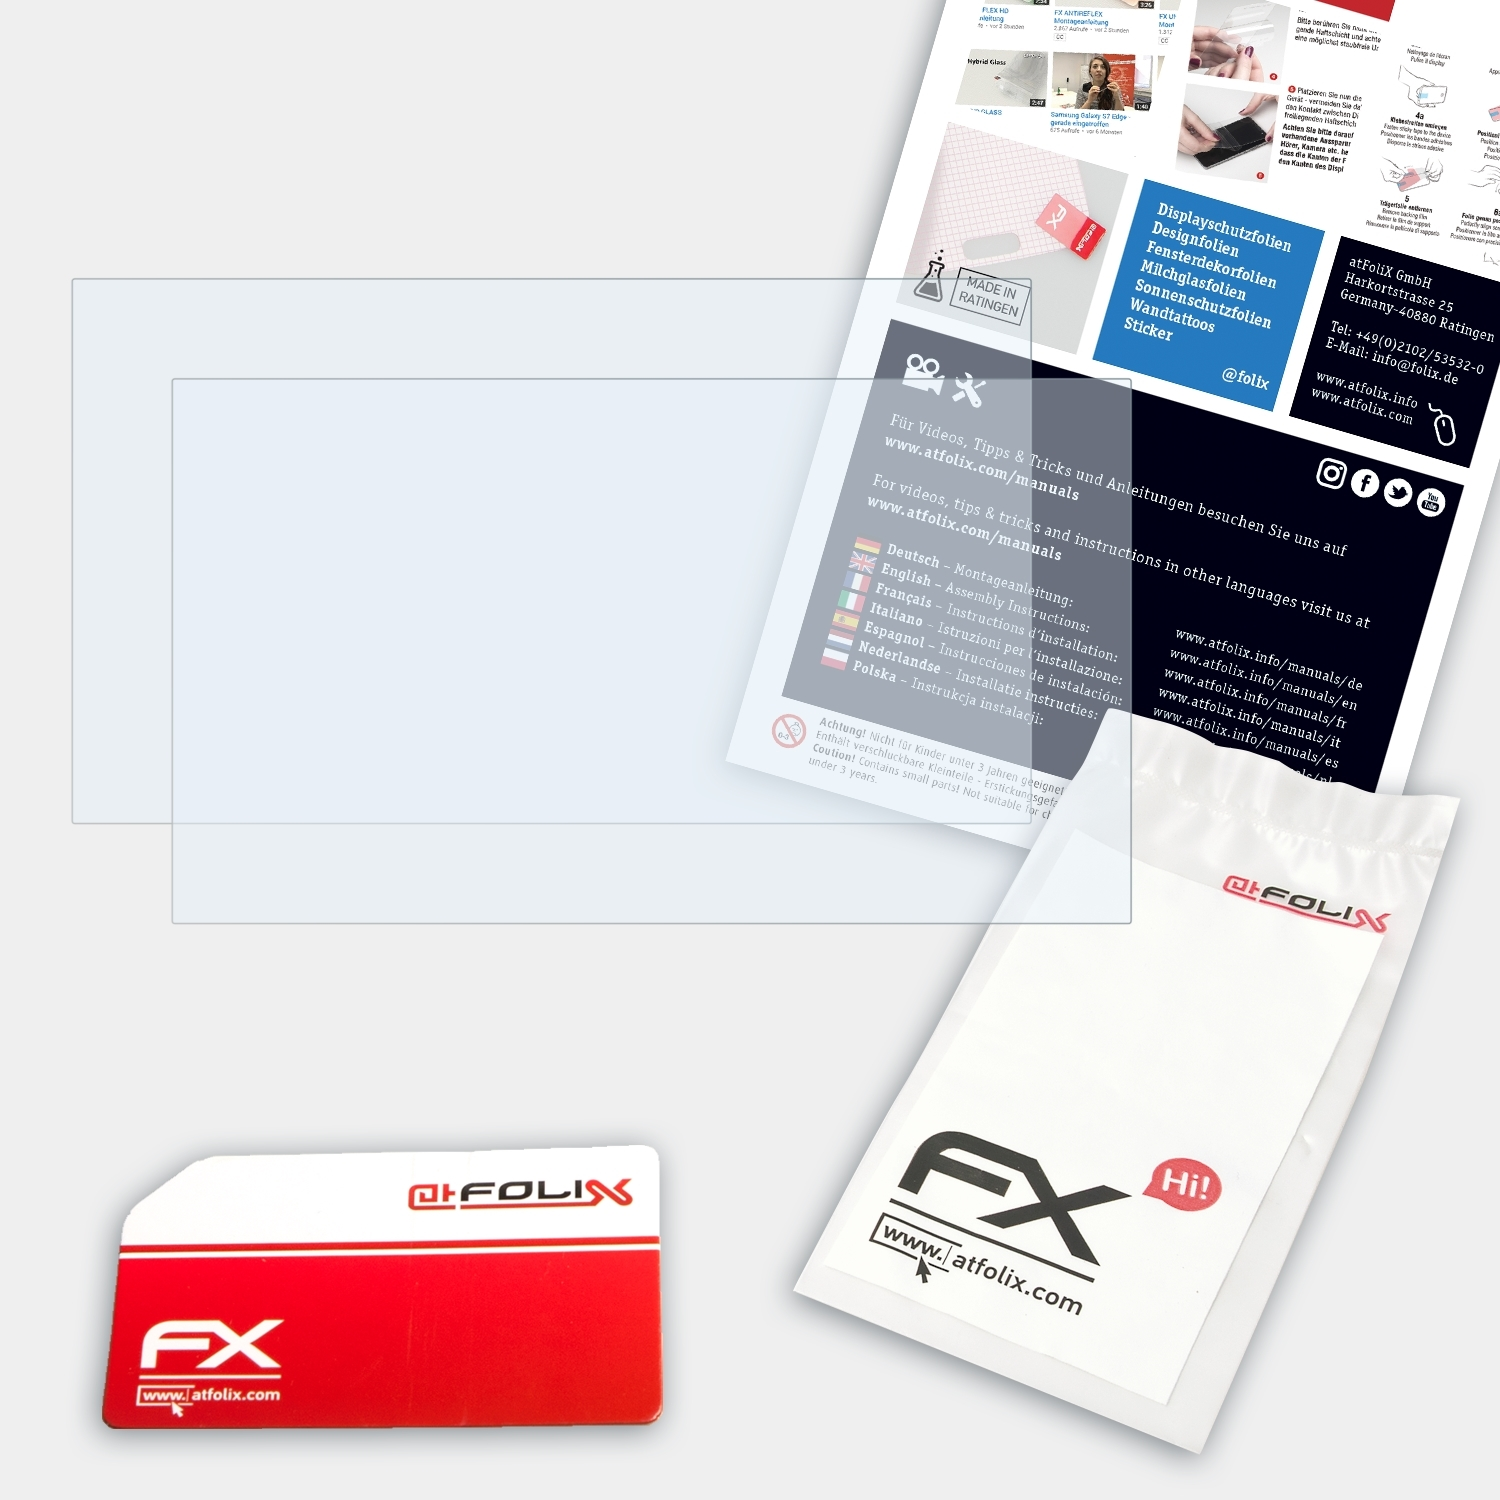 FX-Clear ATFOLIX Displayschutz(für Tablet) 101 Archos Internet 2x